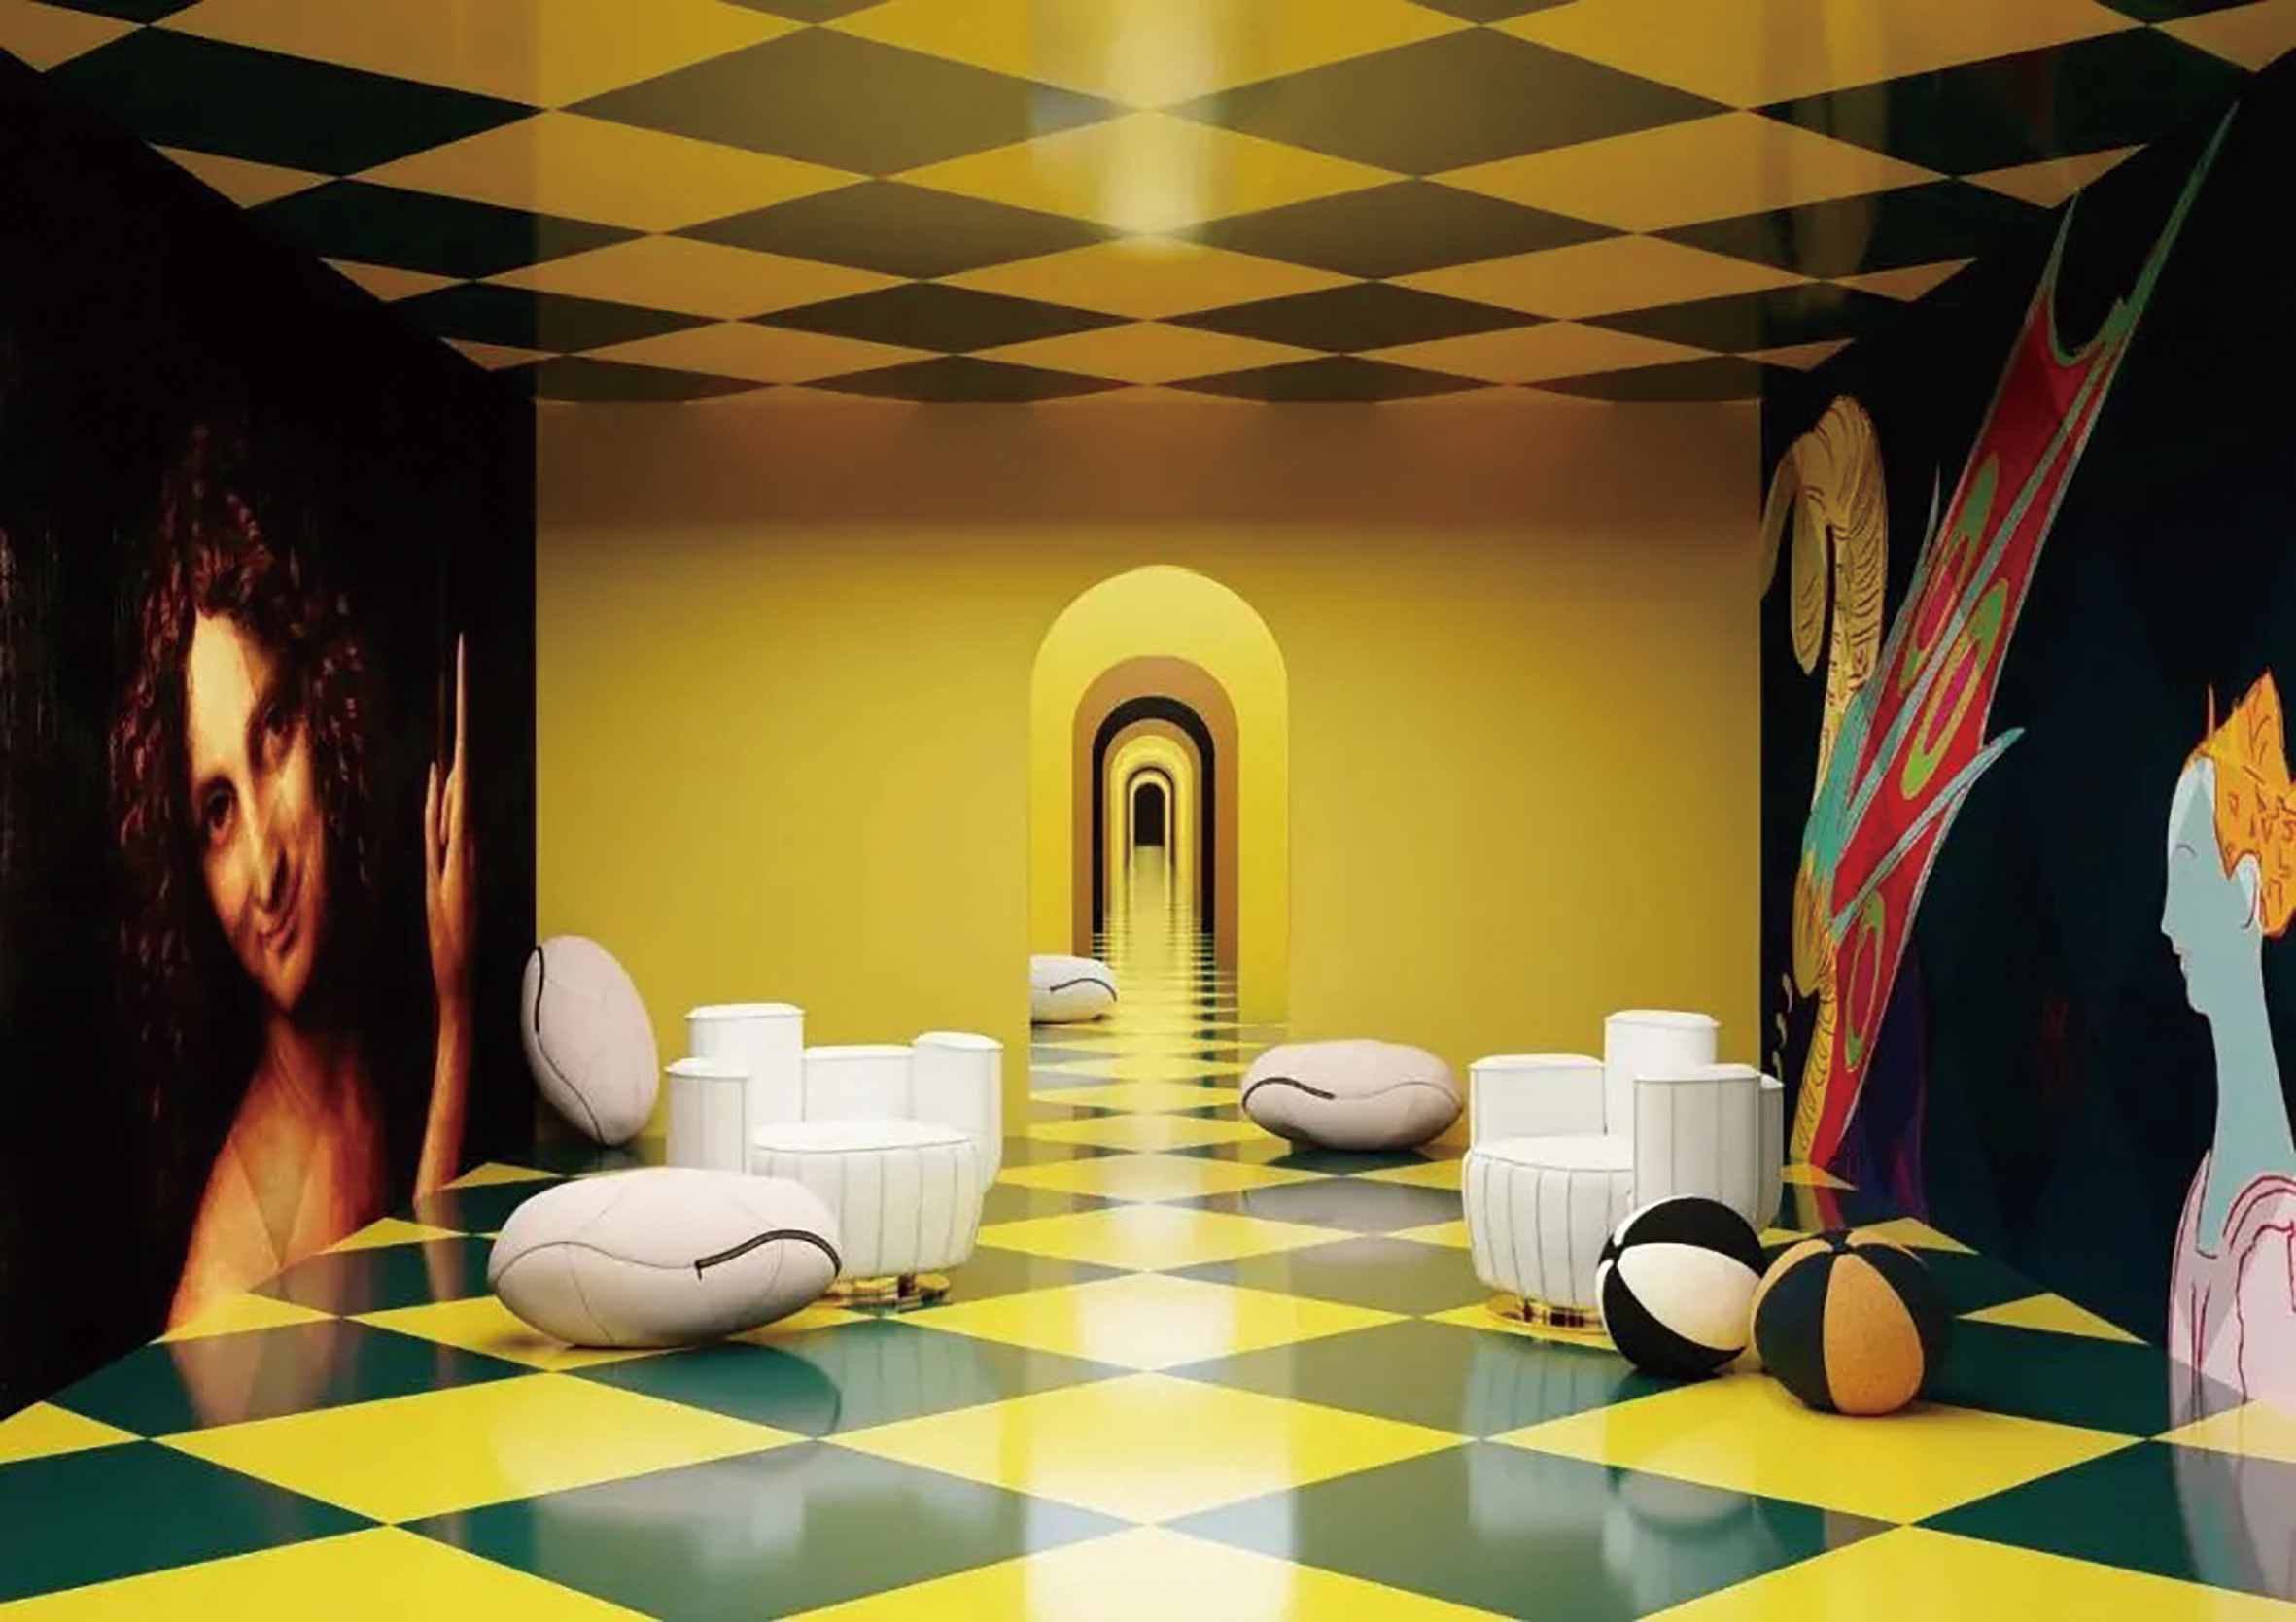 在米兰市中心的巴加蒂瓦尔塞奇博物馆举办的超物理展览“Chromatik House“，通过元宇宙理念传达一系列不同的氛围、主题和美学。